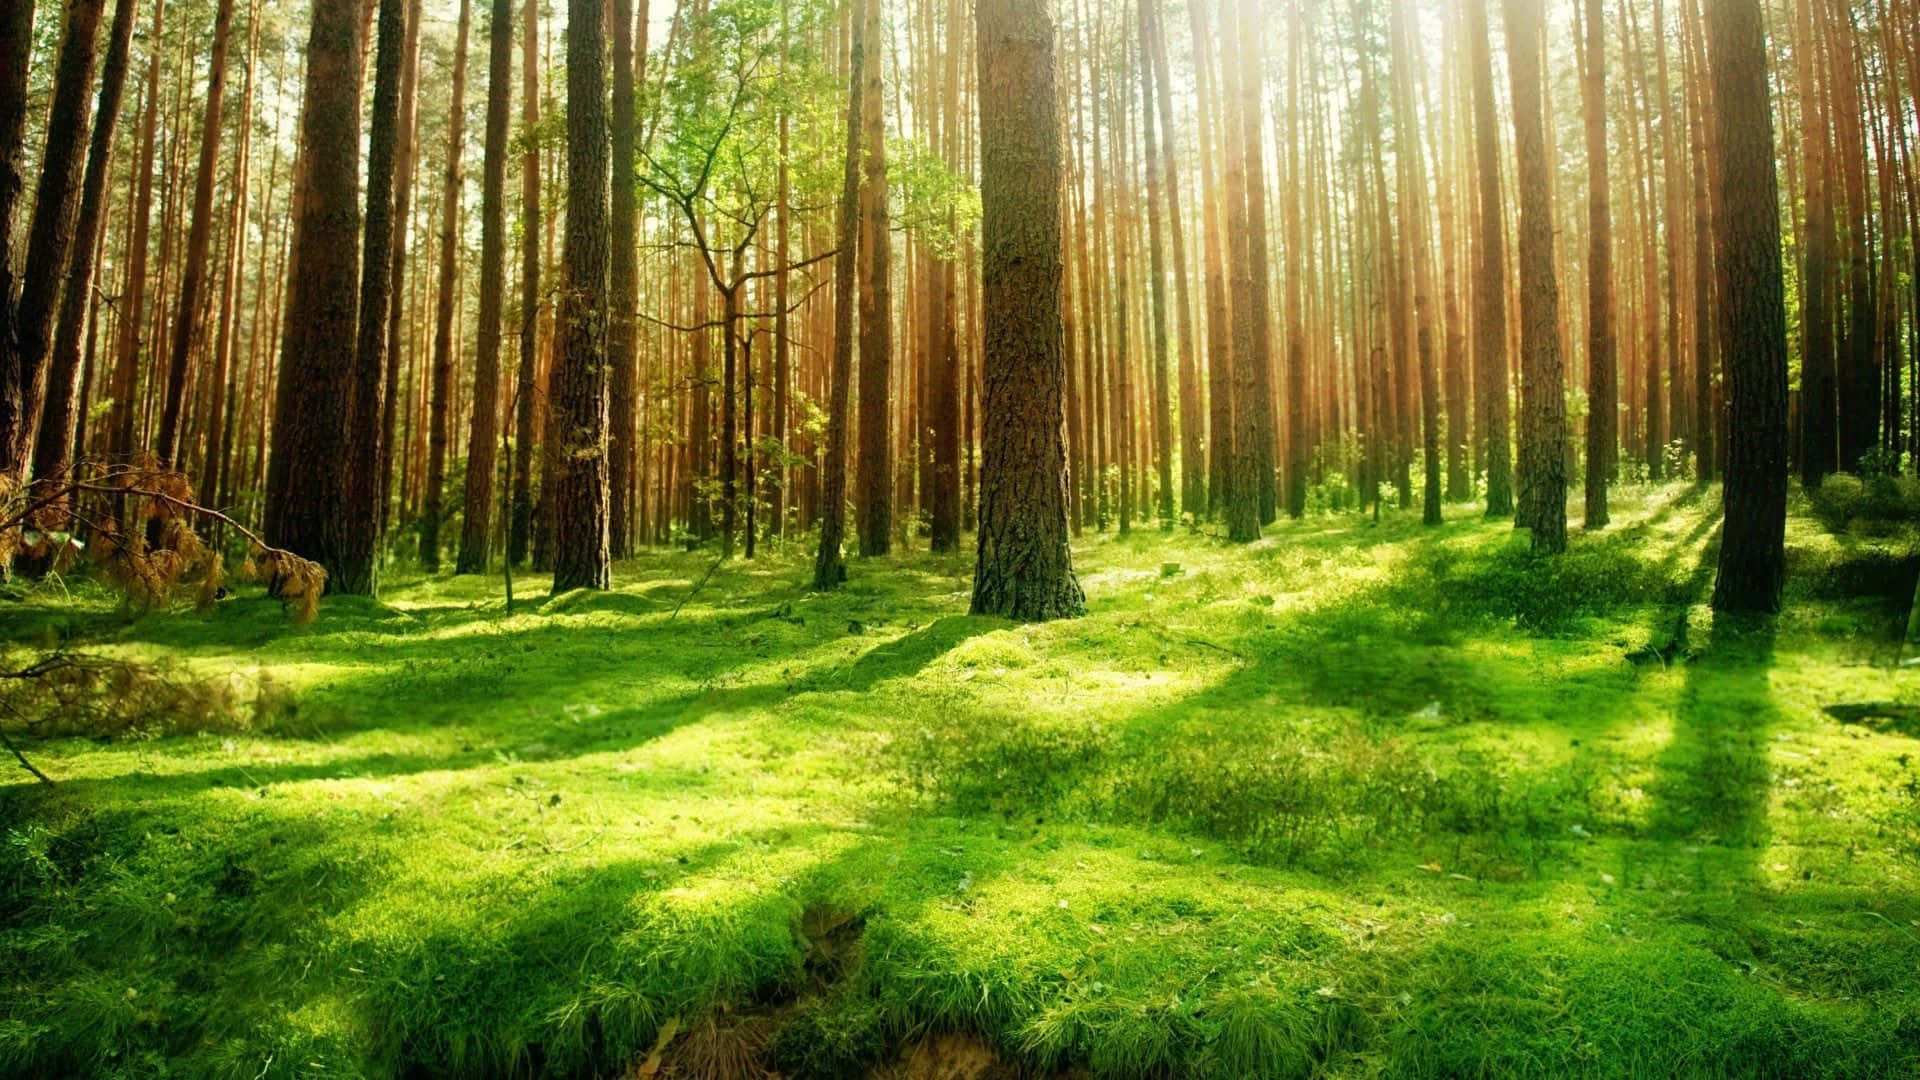 Unaimagen Nítida De Una Escena Natural Aislada, Con Un Solo Árbol Y Un Campo De Césped En Un Bosque Sereno. Fondo de pantalla